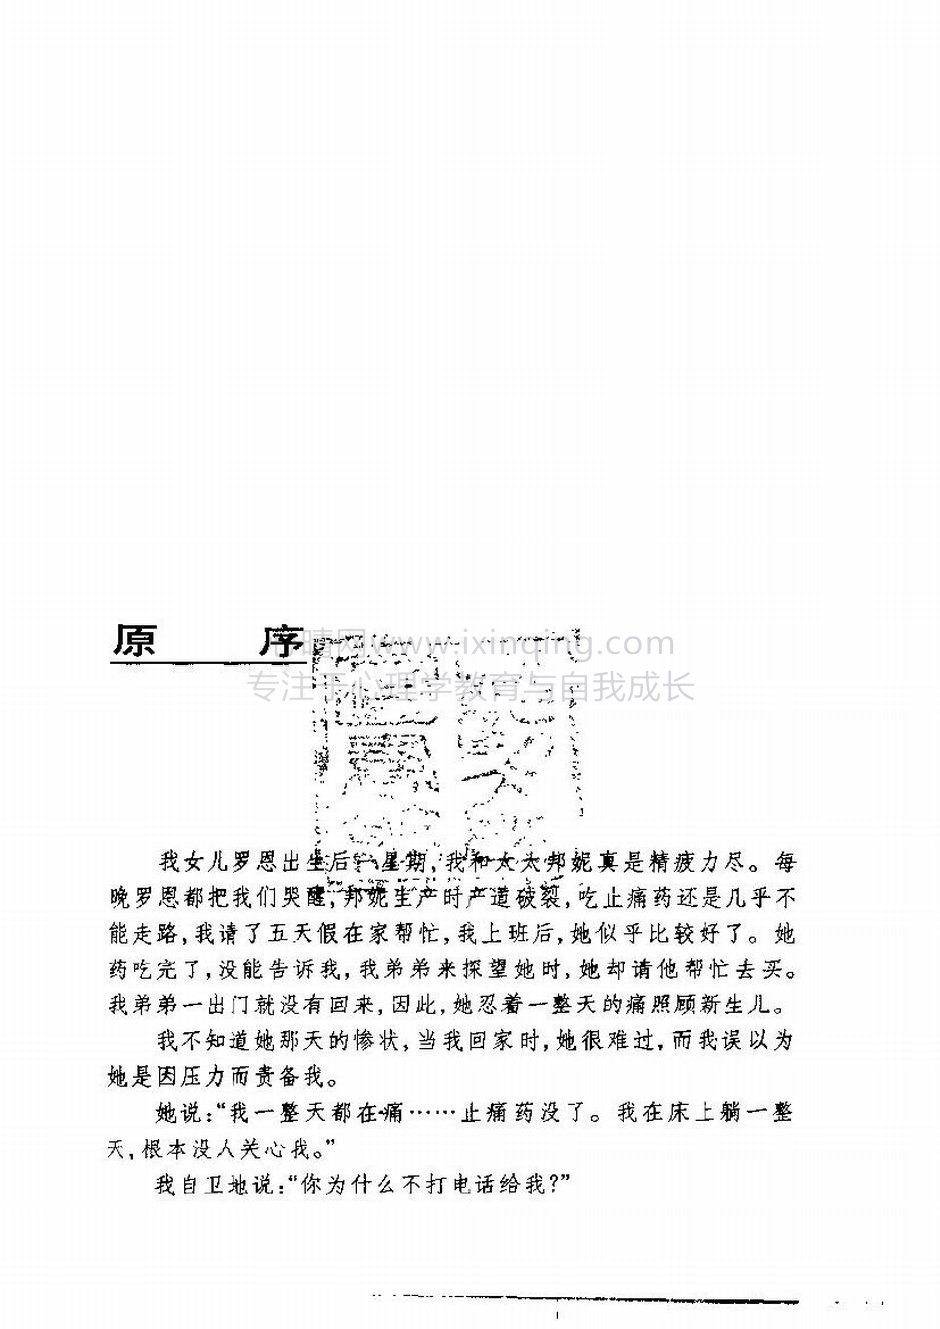 封面、原序、译序、中文版出版前言(13)